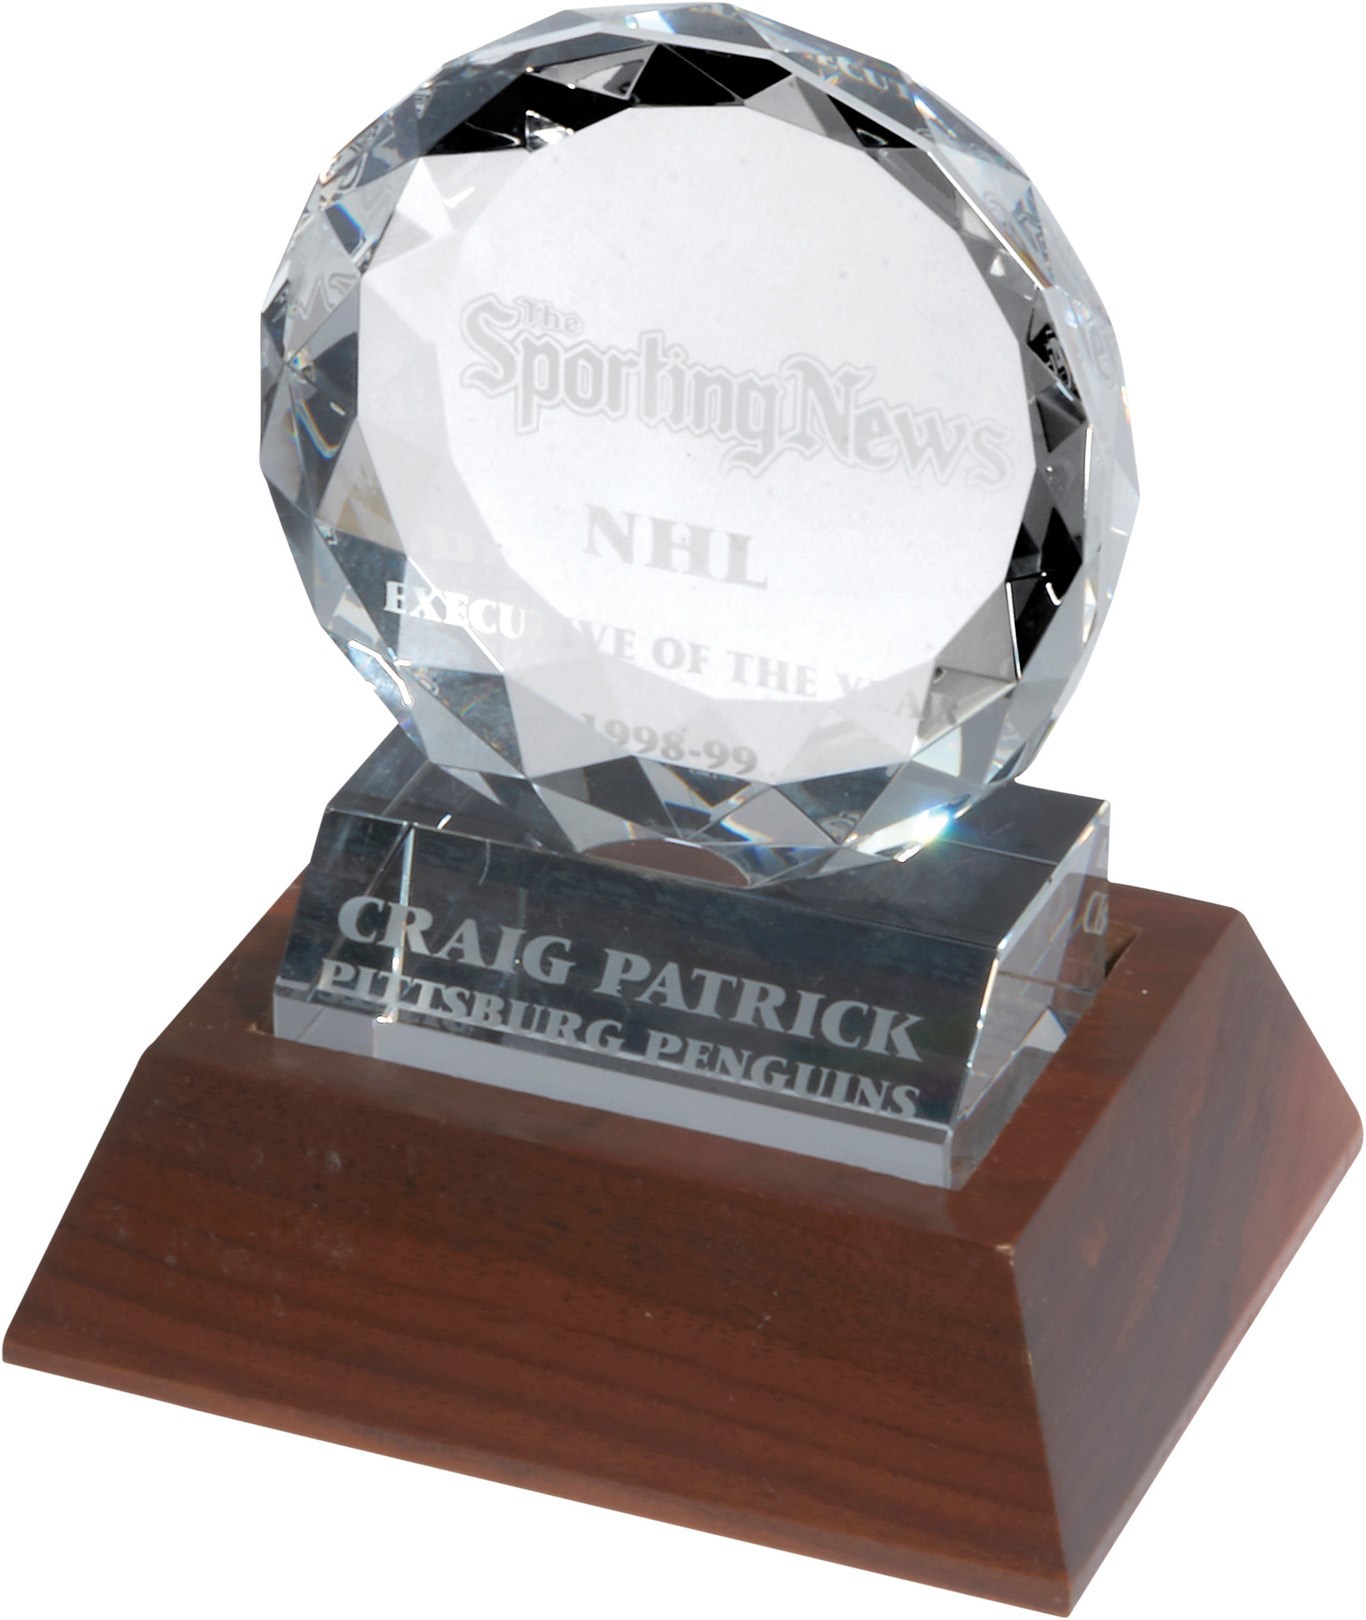 - 1998-99 Craig Patrick Sporting News NHL Executive of the Year Award